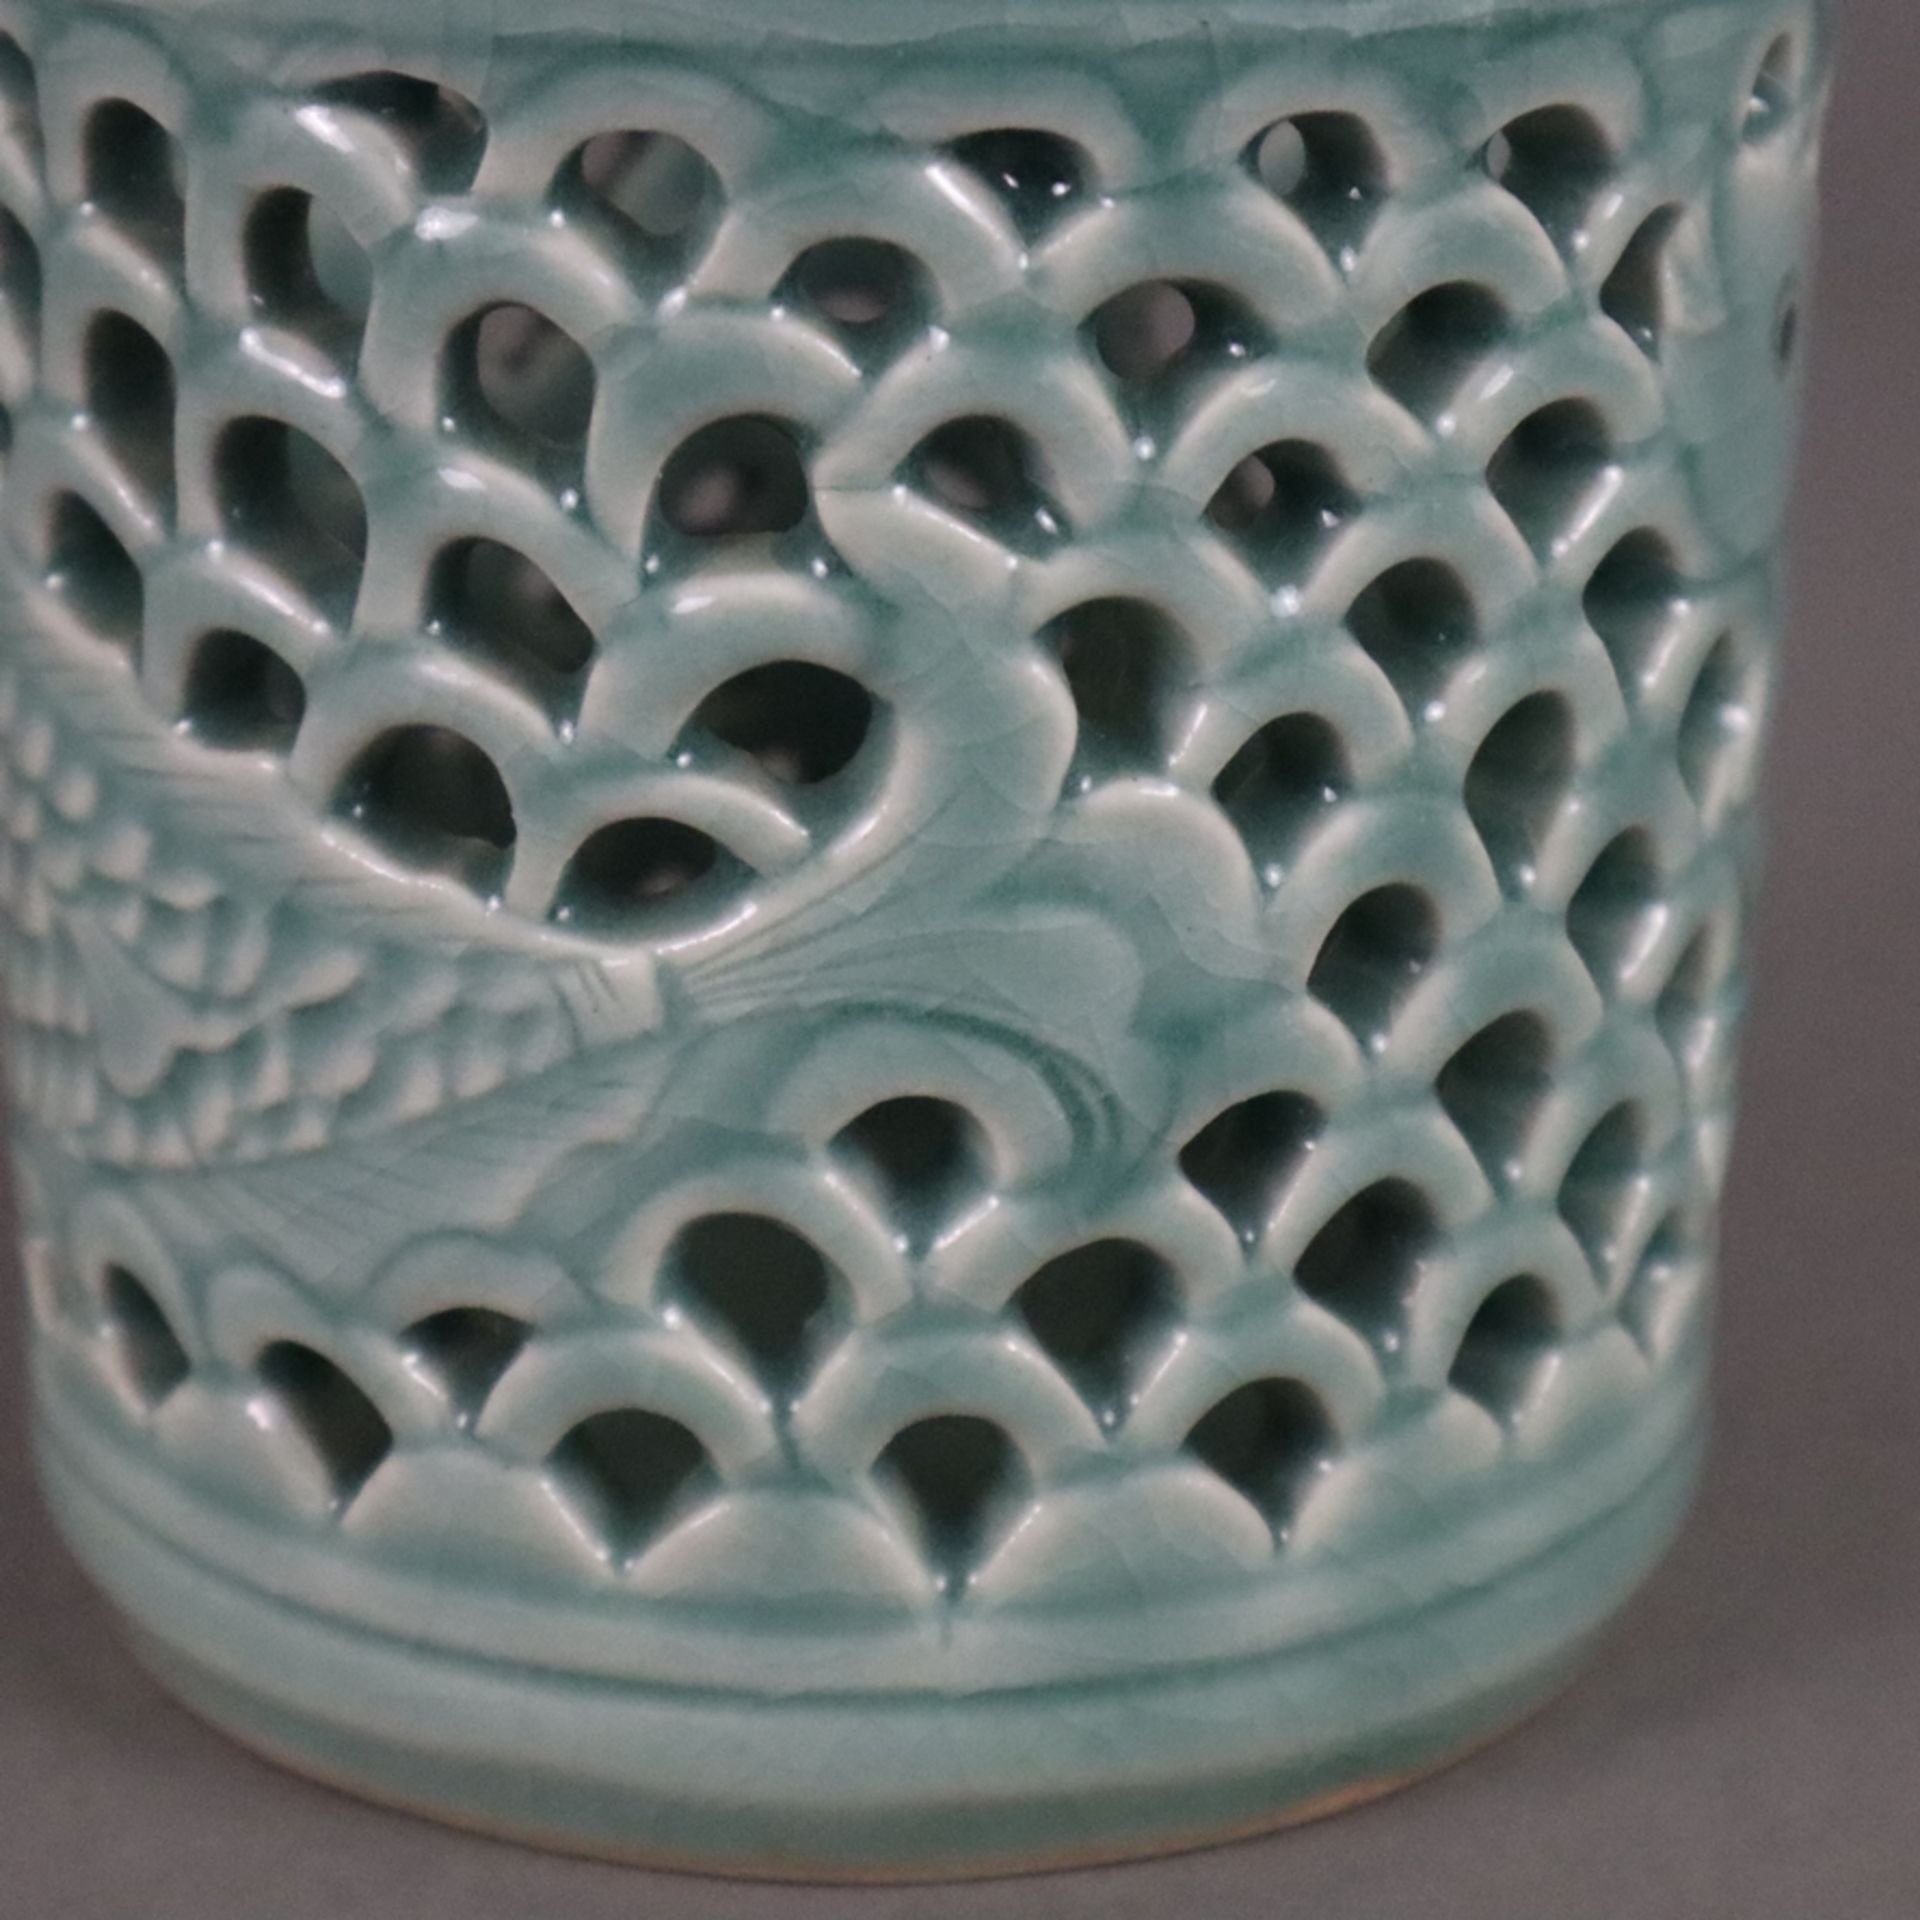 Pinselbecher - China, 20. Jh., Keramik mit bläulicher Glasur, zylindrische Wandung umlaufend mit We - Bild 5 aus 6